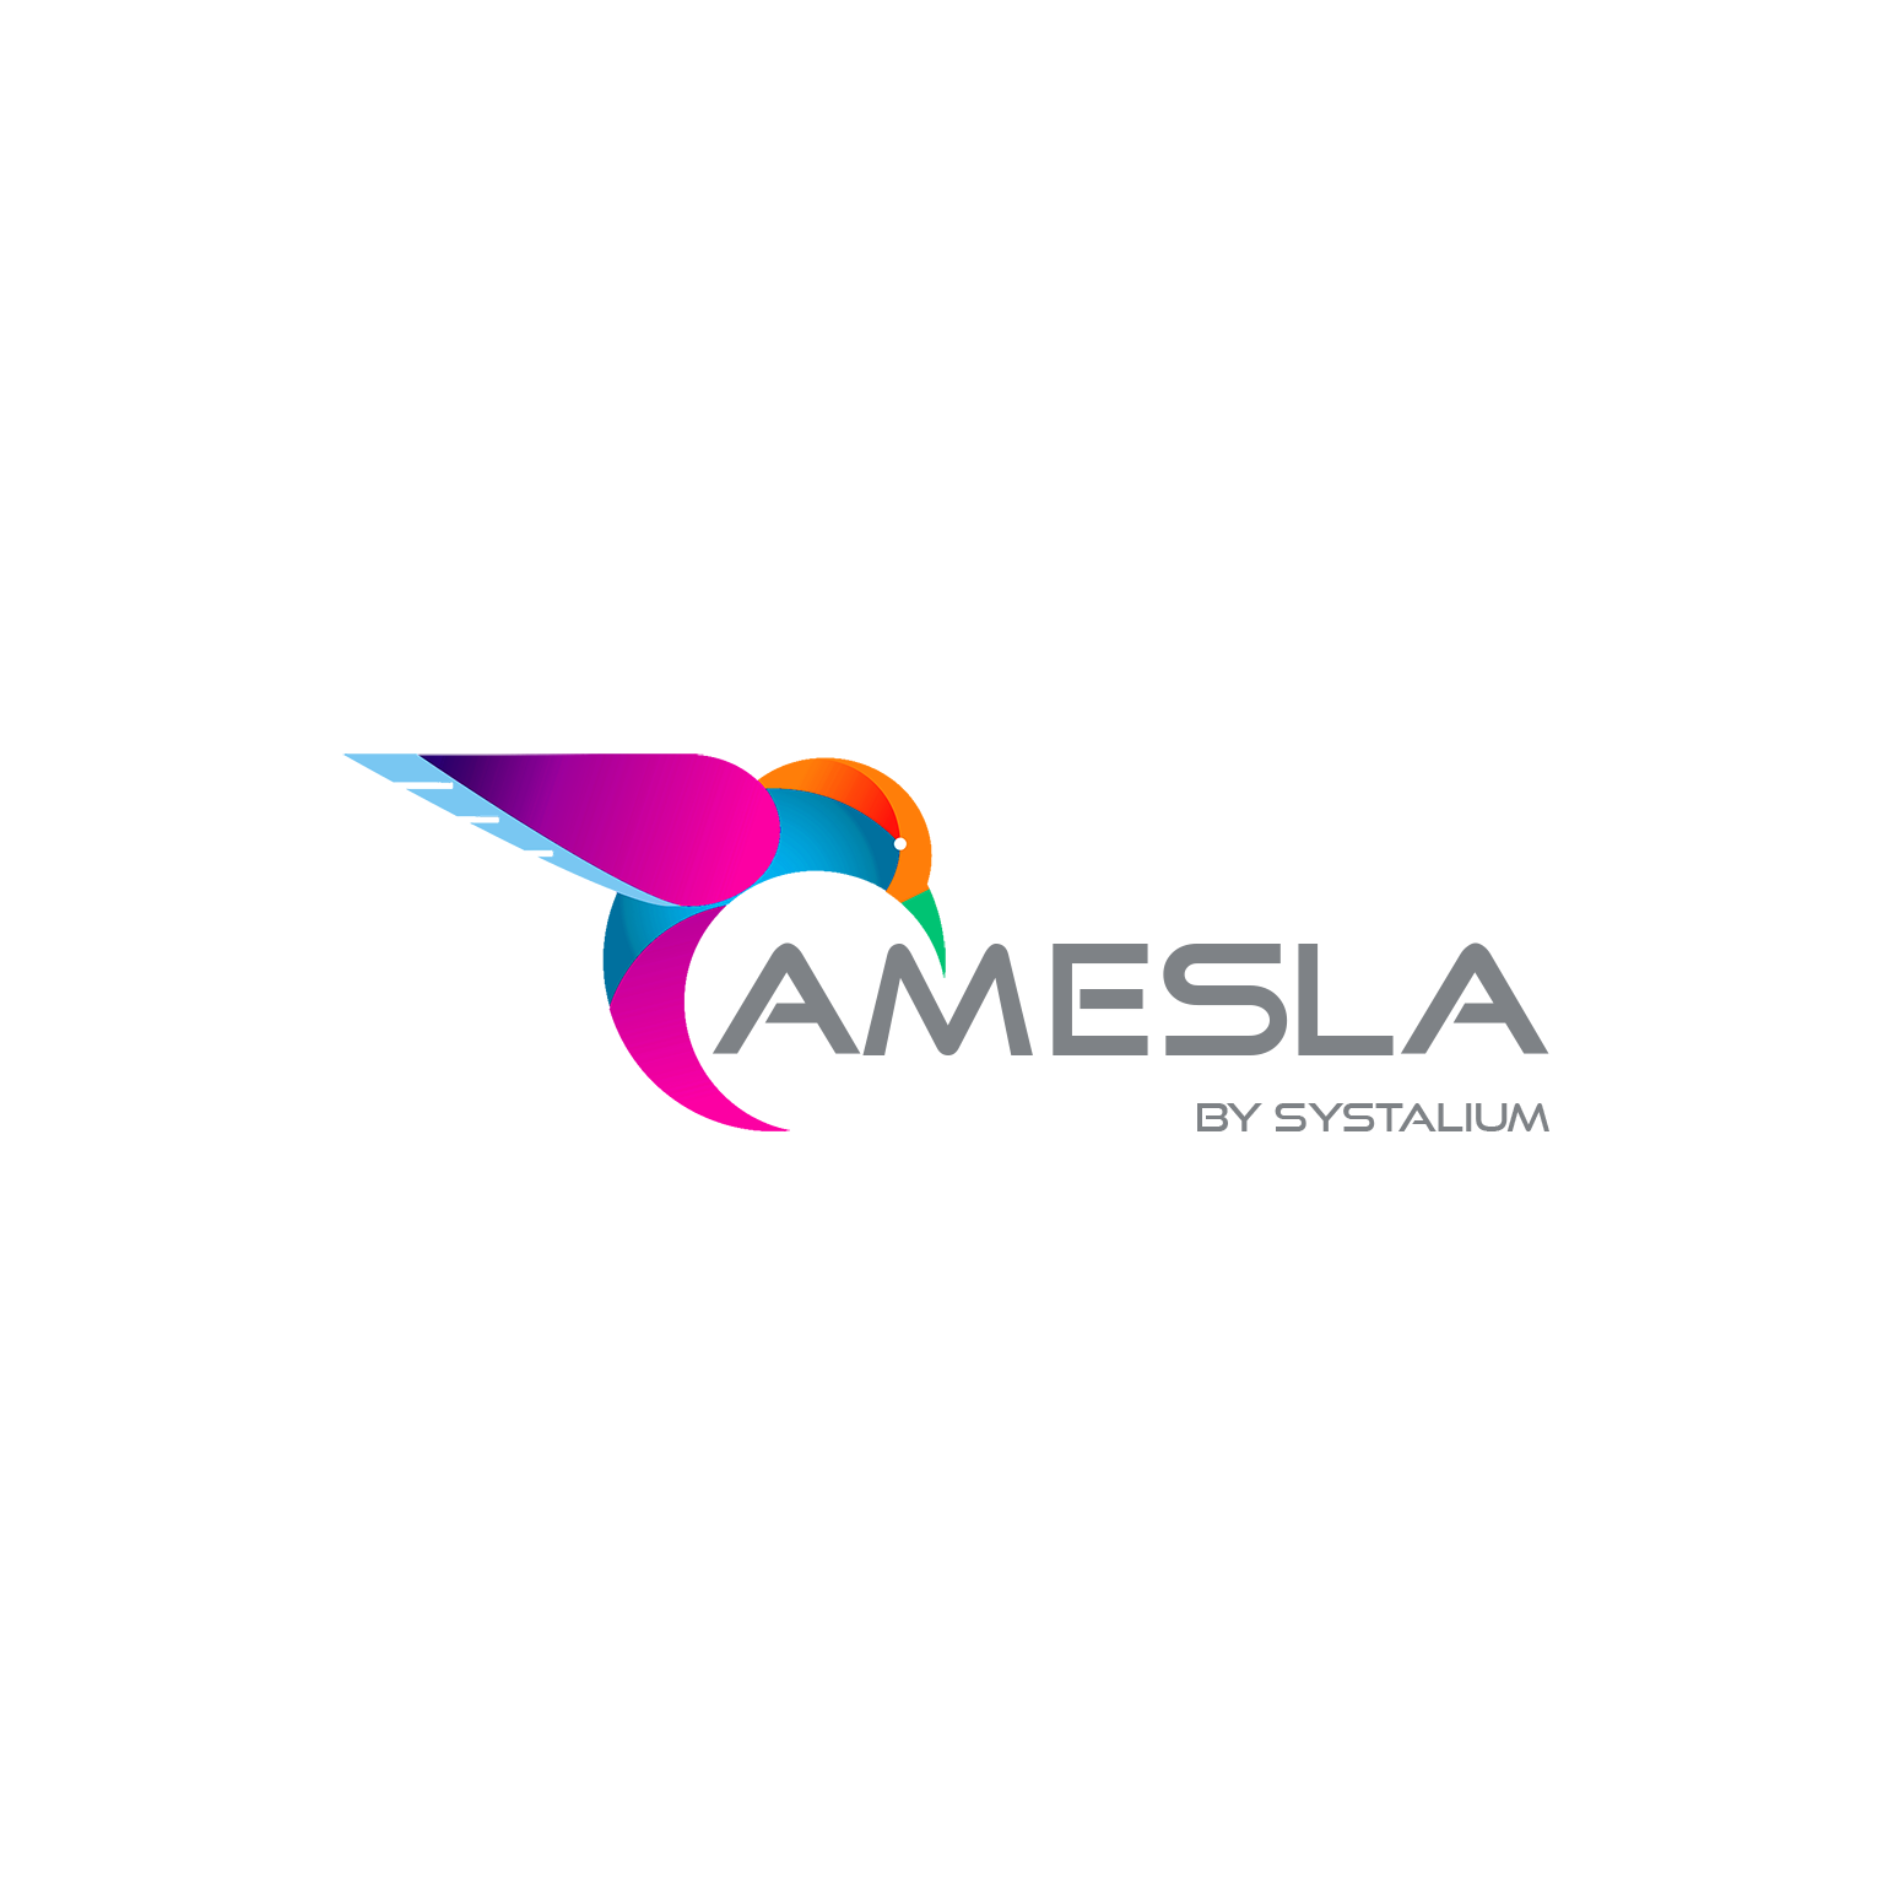 Partenaire de la société Amesla, qui propose le meilleur logiciel de suivi patients